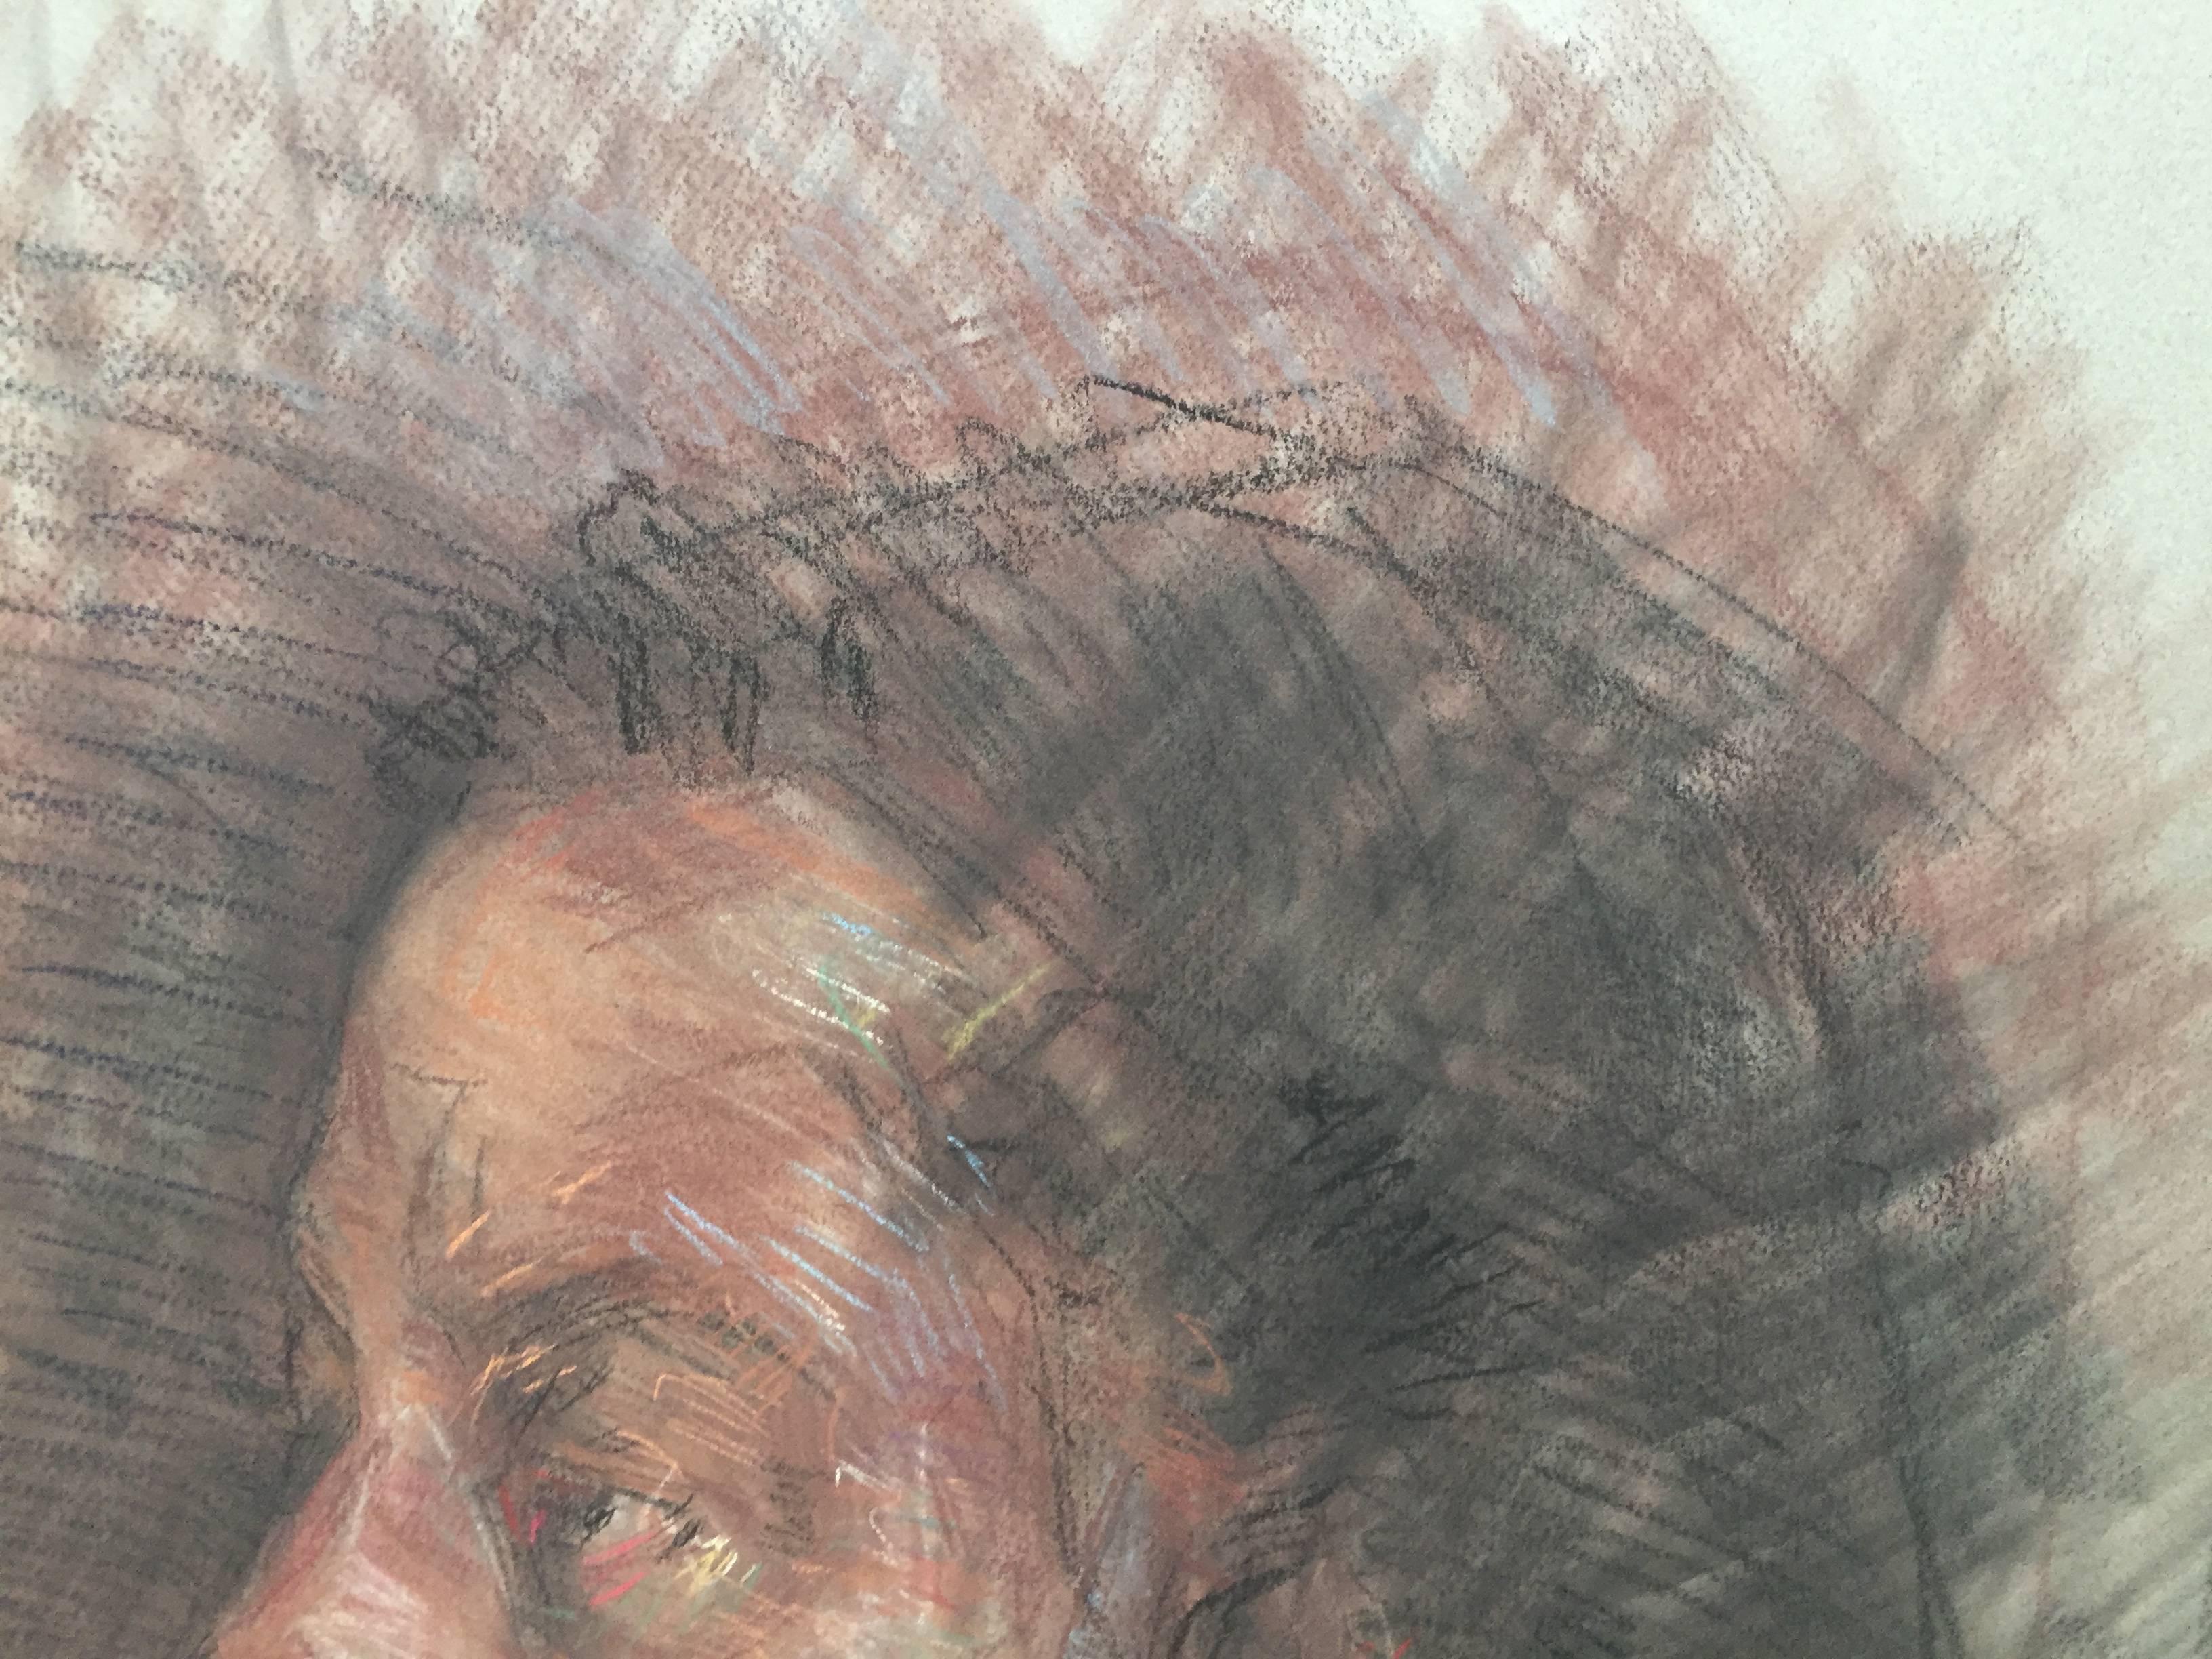 Portrait d'une tête d'homme, de profil, par BenFenske. L'artiste utilise une variété de couleurs pour transmettre une impression naturaliste.


Biographie de l'artiste
Ben Fenske (né en 1978), bien que natif du Minnesota, travaille et vit depuis